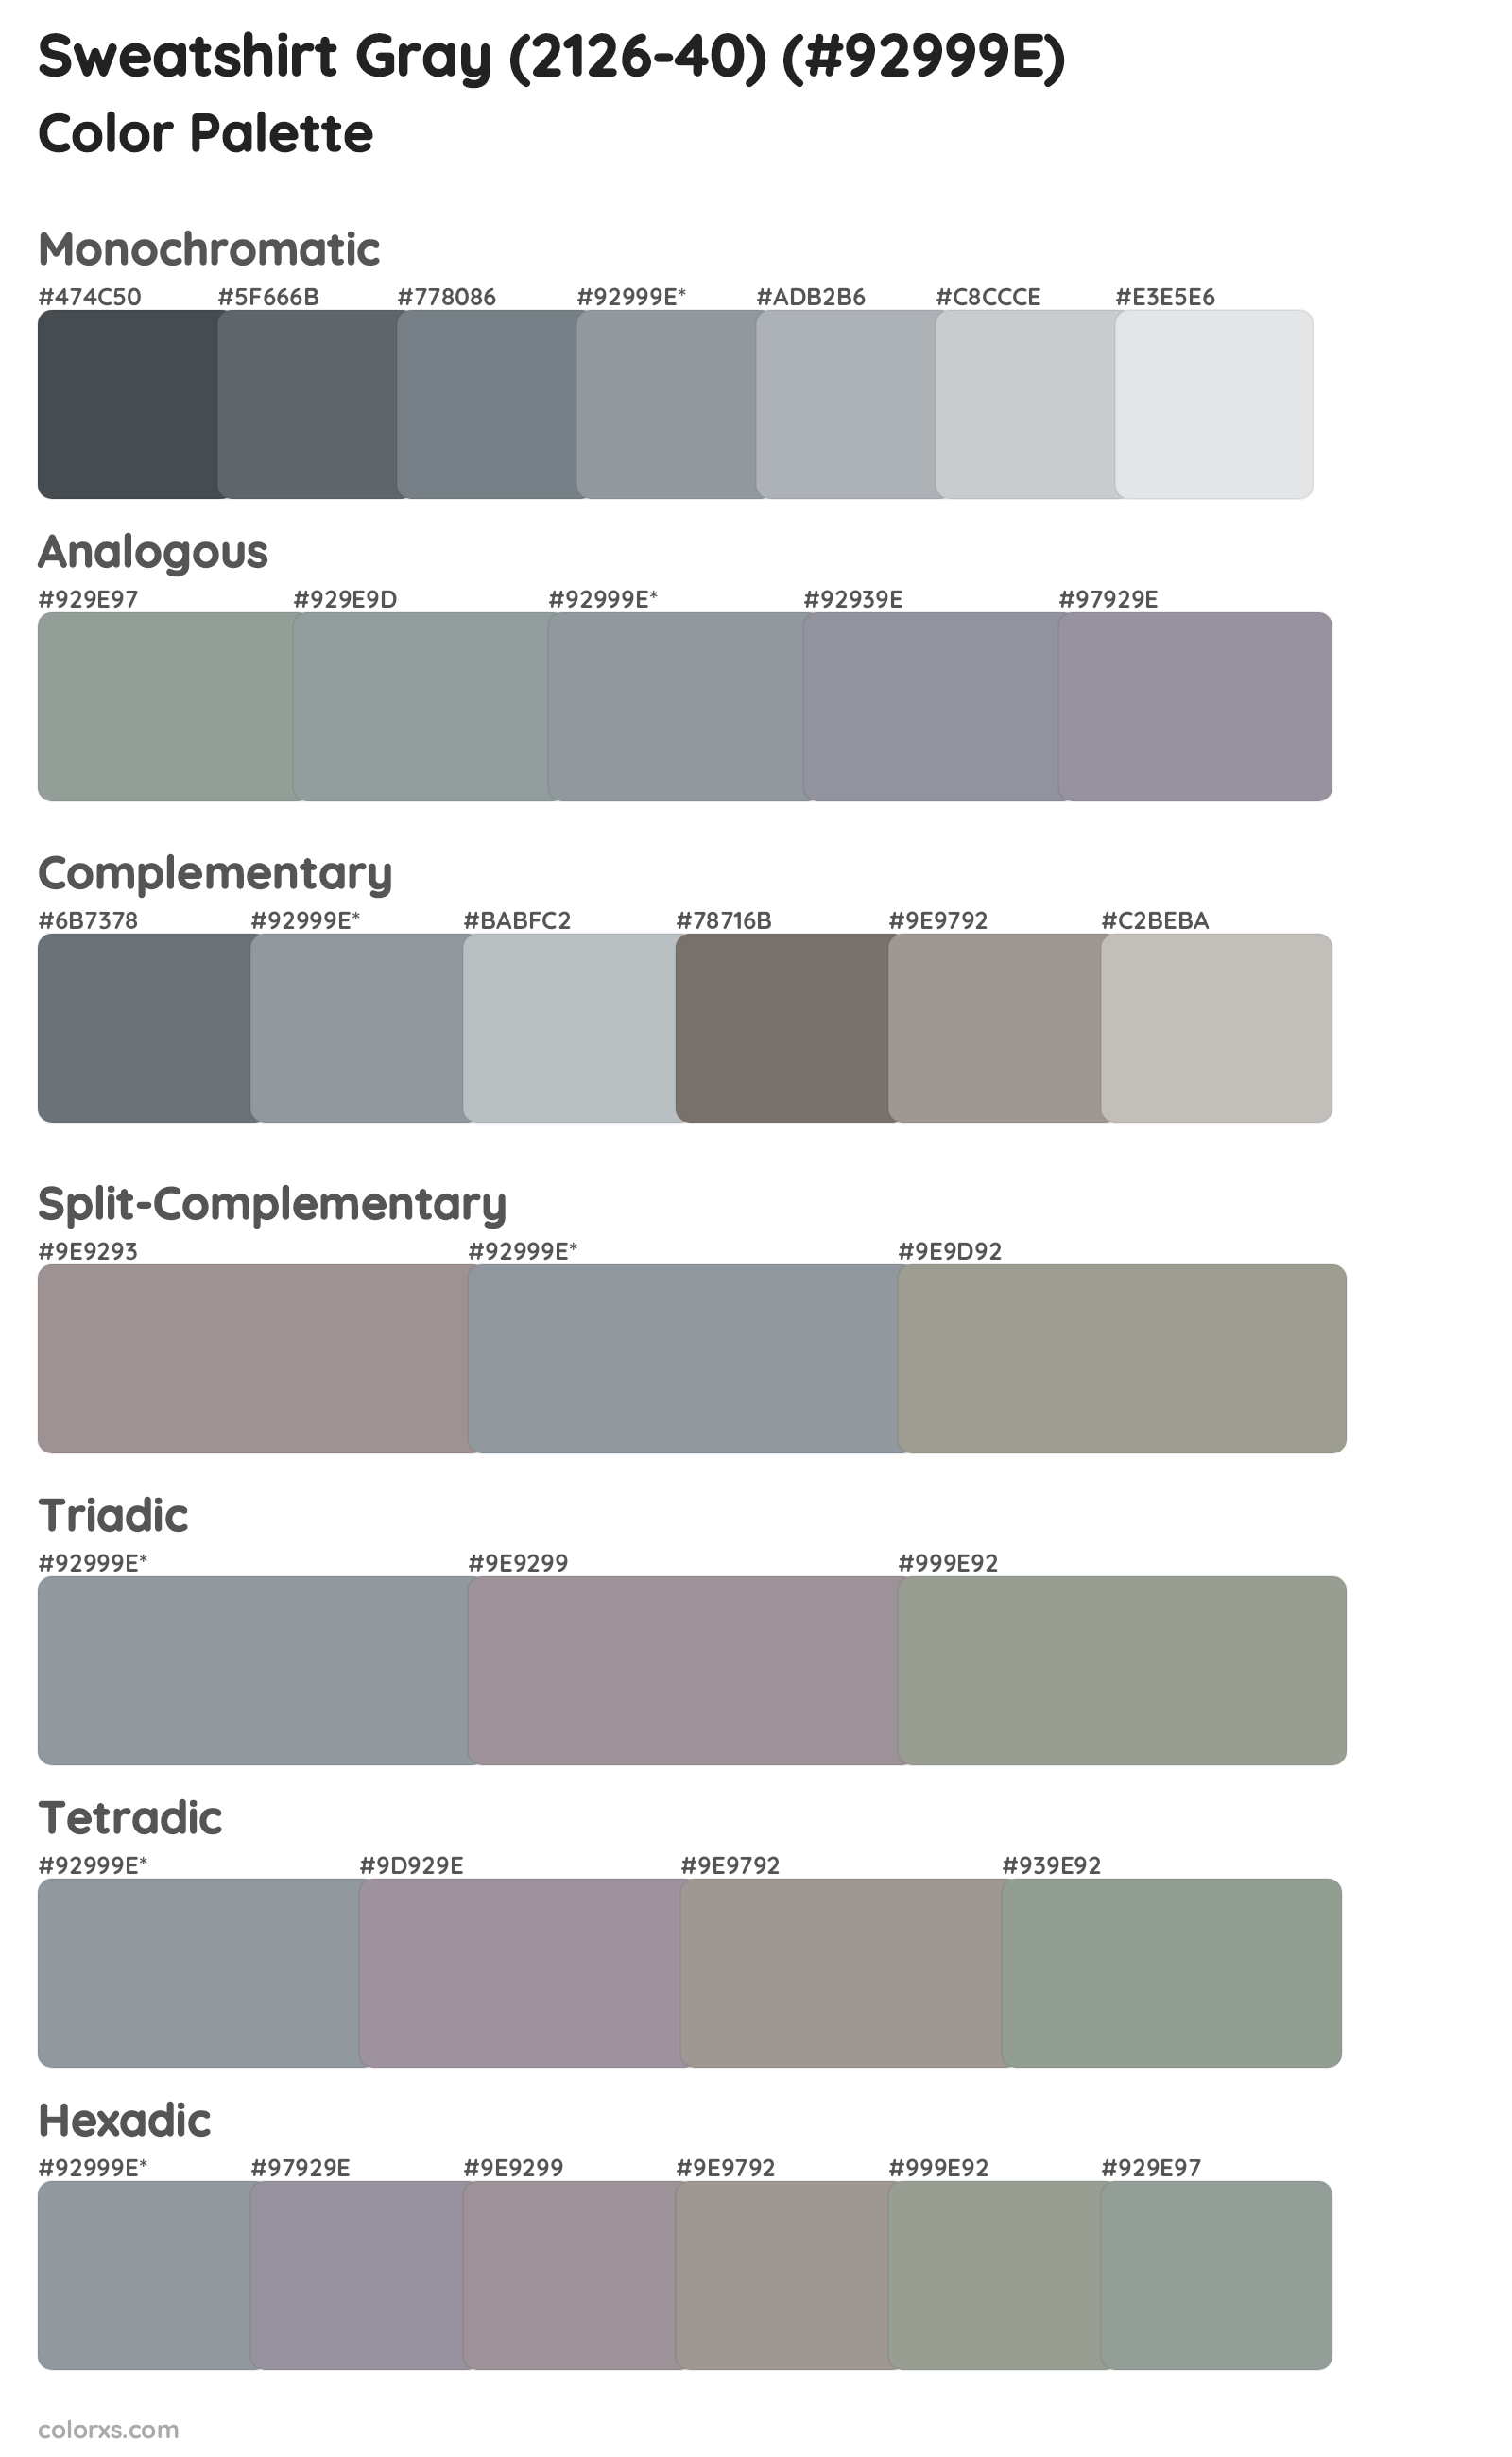 Sweatshirt Gray (2126-40) Color Scheme Palettes